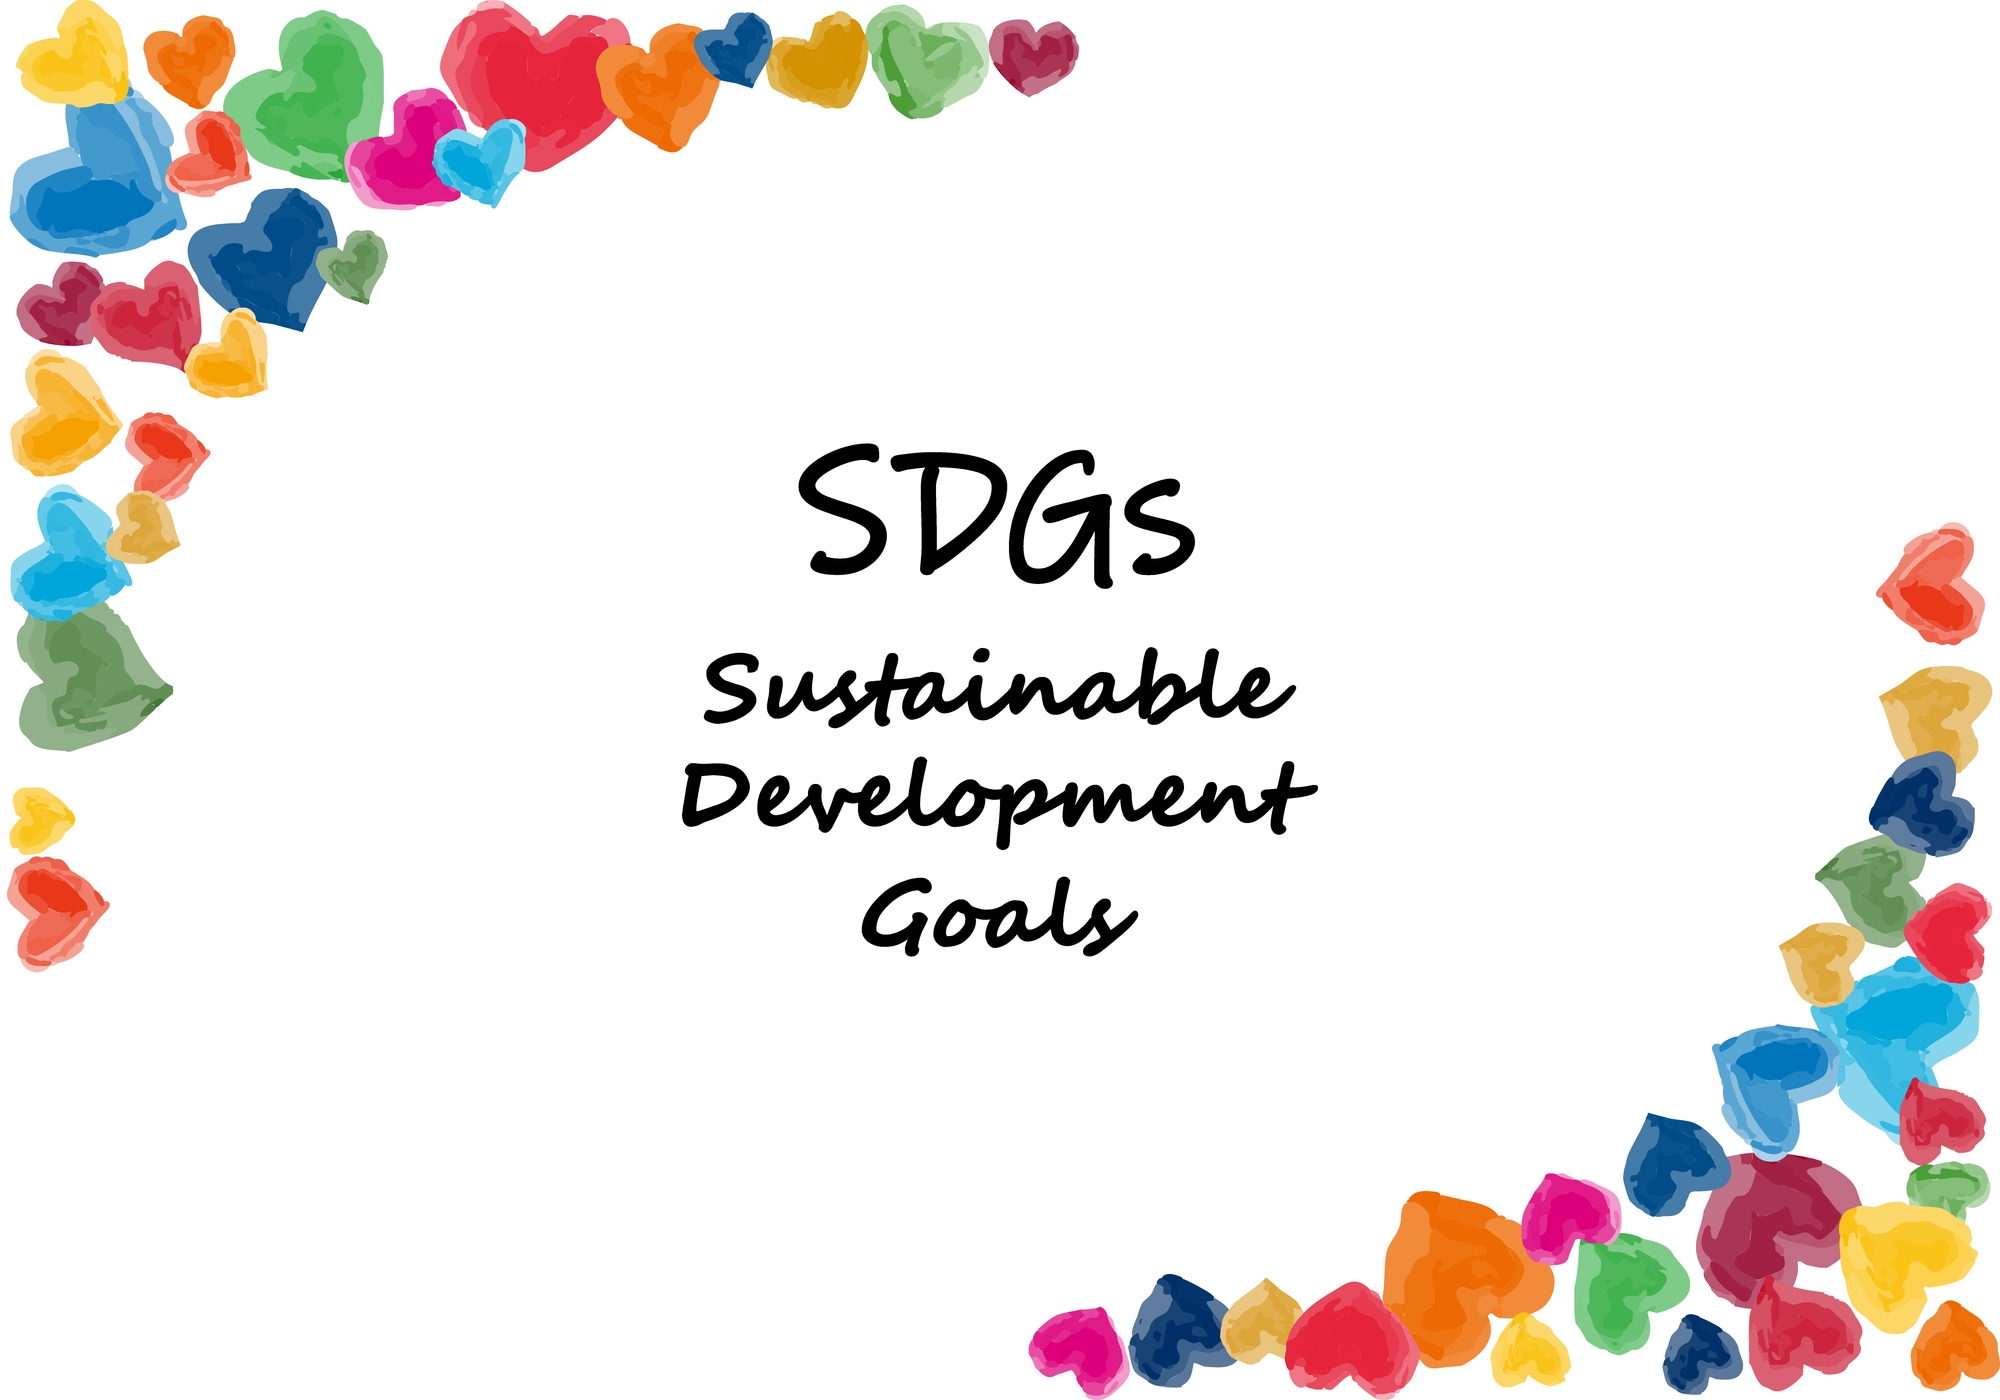 SDGsとは？国際的な取り組みの内容や意味をわかりやすく紹介